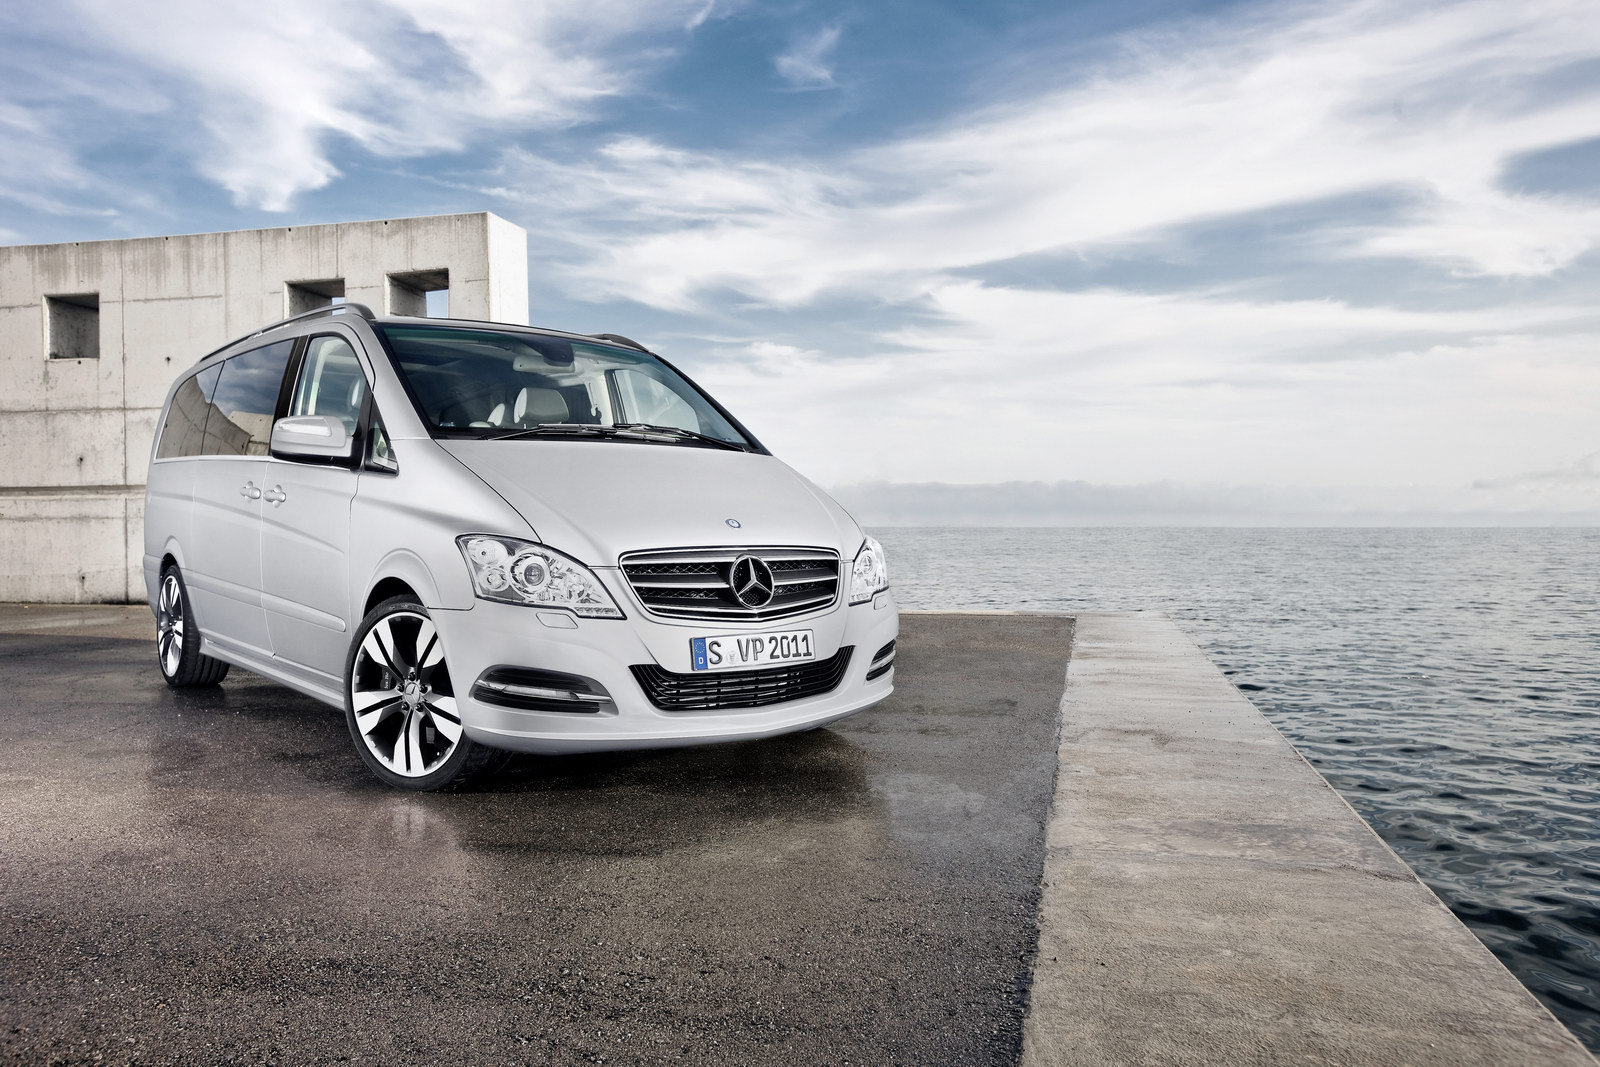 Mercedes-Benz Viano Vision Pearl este vopsit intr-o nuanta speciala Magno Pearl Grey